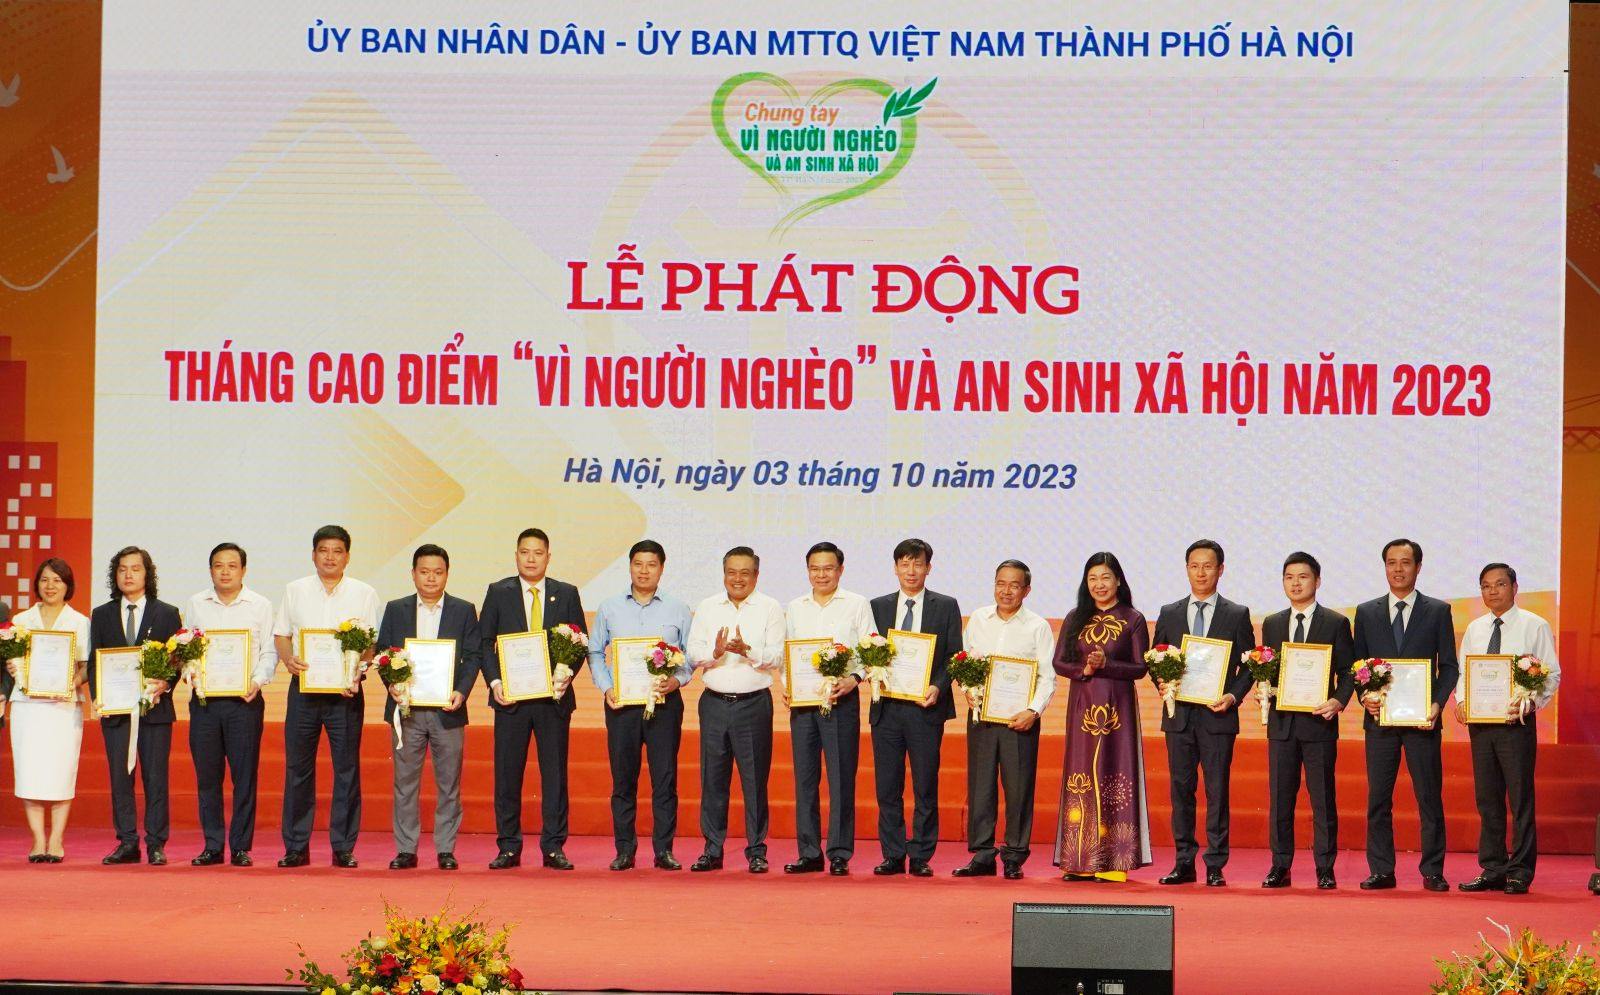 Chủ tịch UBND TP, Hà Nội Trần Sỹ Thanh và Chủ tịch Ủy ban MTTQ Việt Nam TP. Hà Nội Nguyễn Lan Hương tiếp nhận sự ủng hộ và trao tặng Thư cảm ơn ghi nhận sự ủng hộ của các đơn vị.